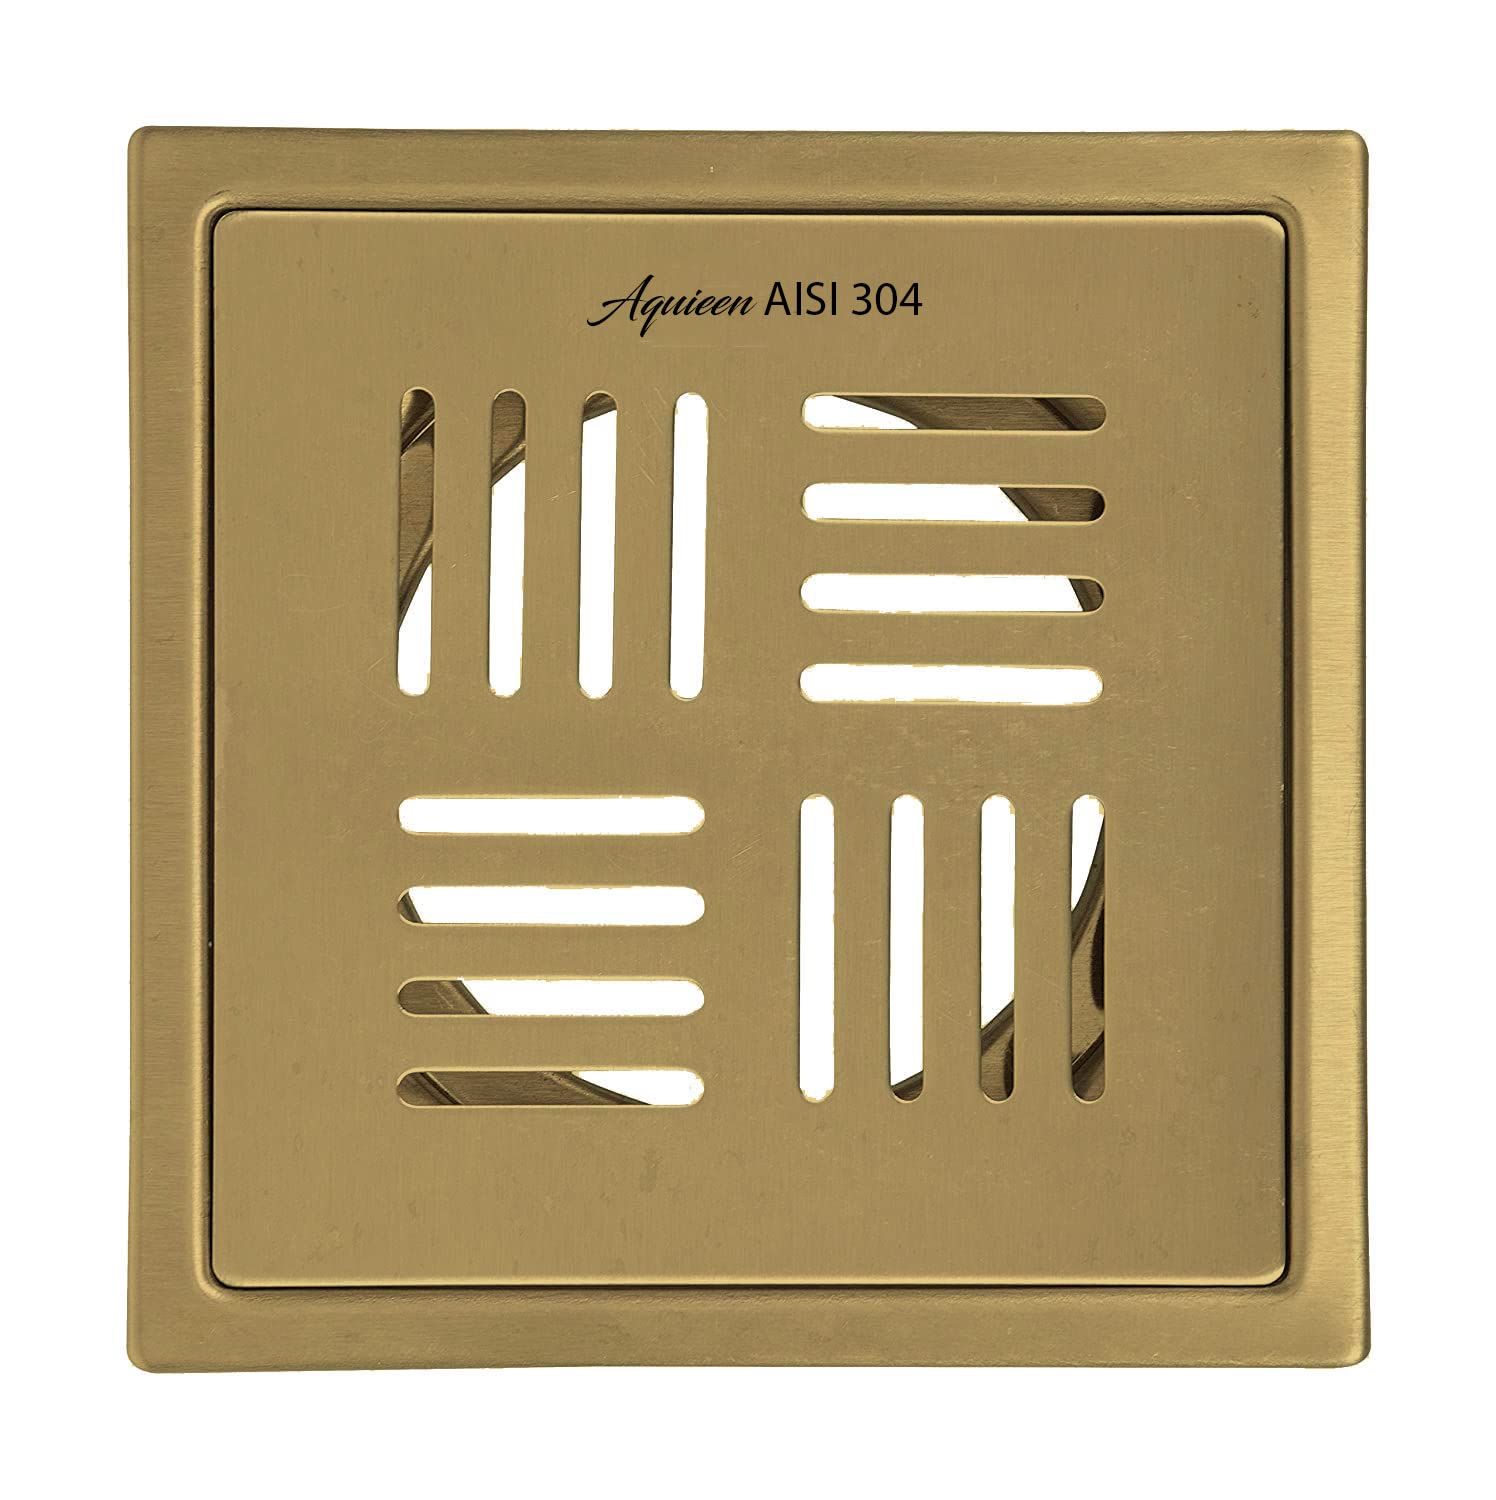 Aquieen SS 304 Bathroom Floor Grating 6" x 6" (Gold)